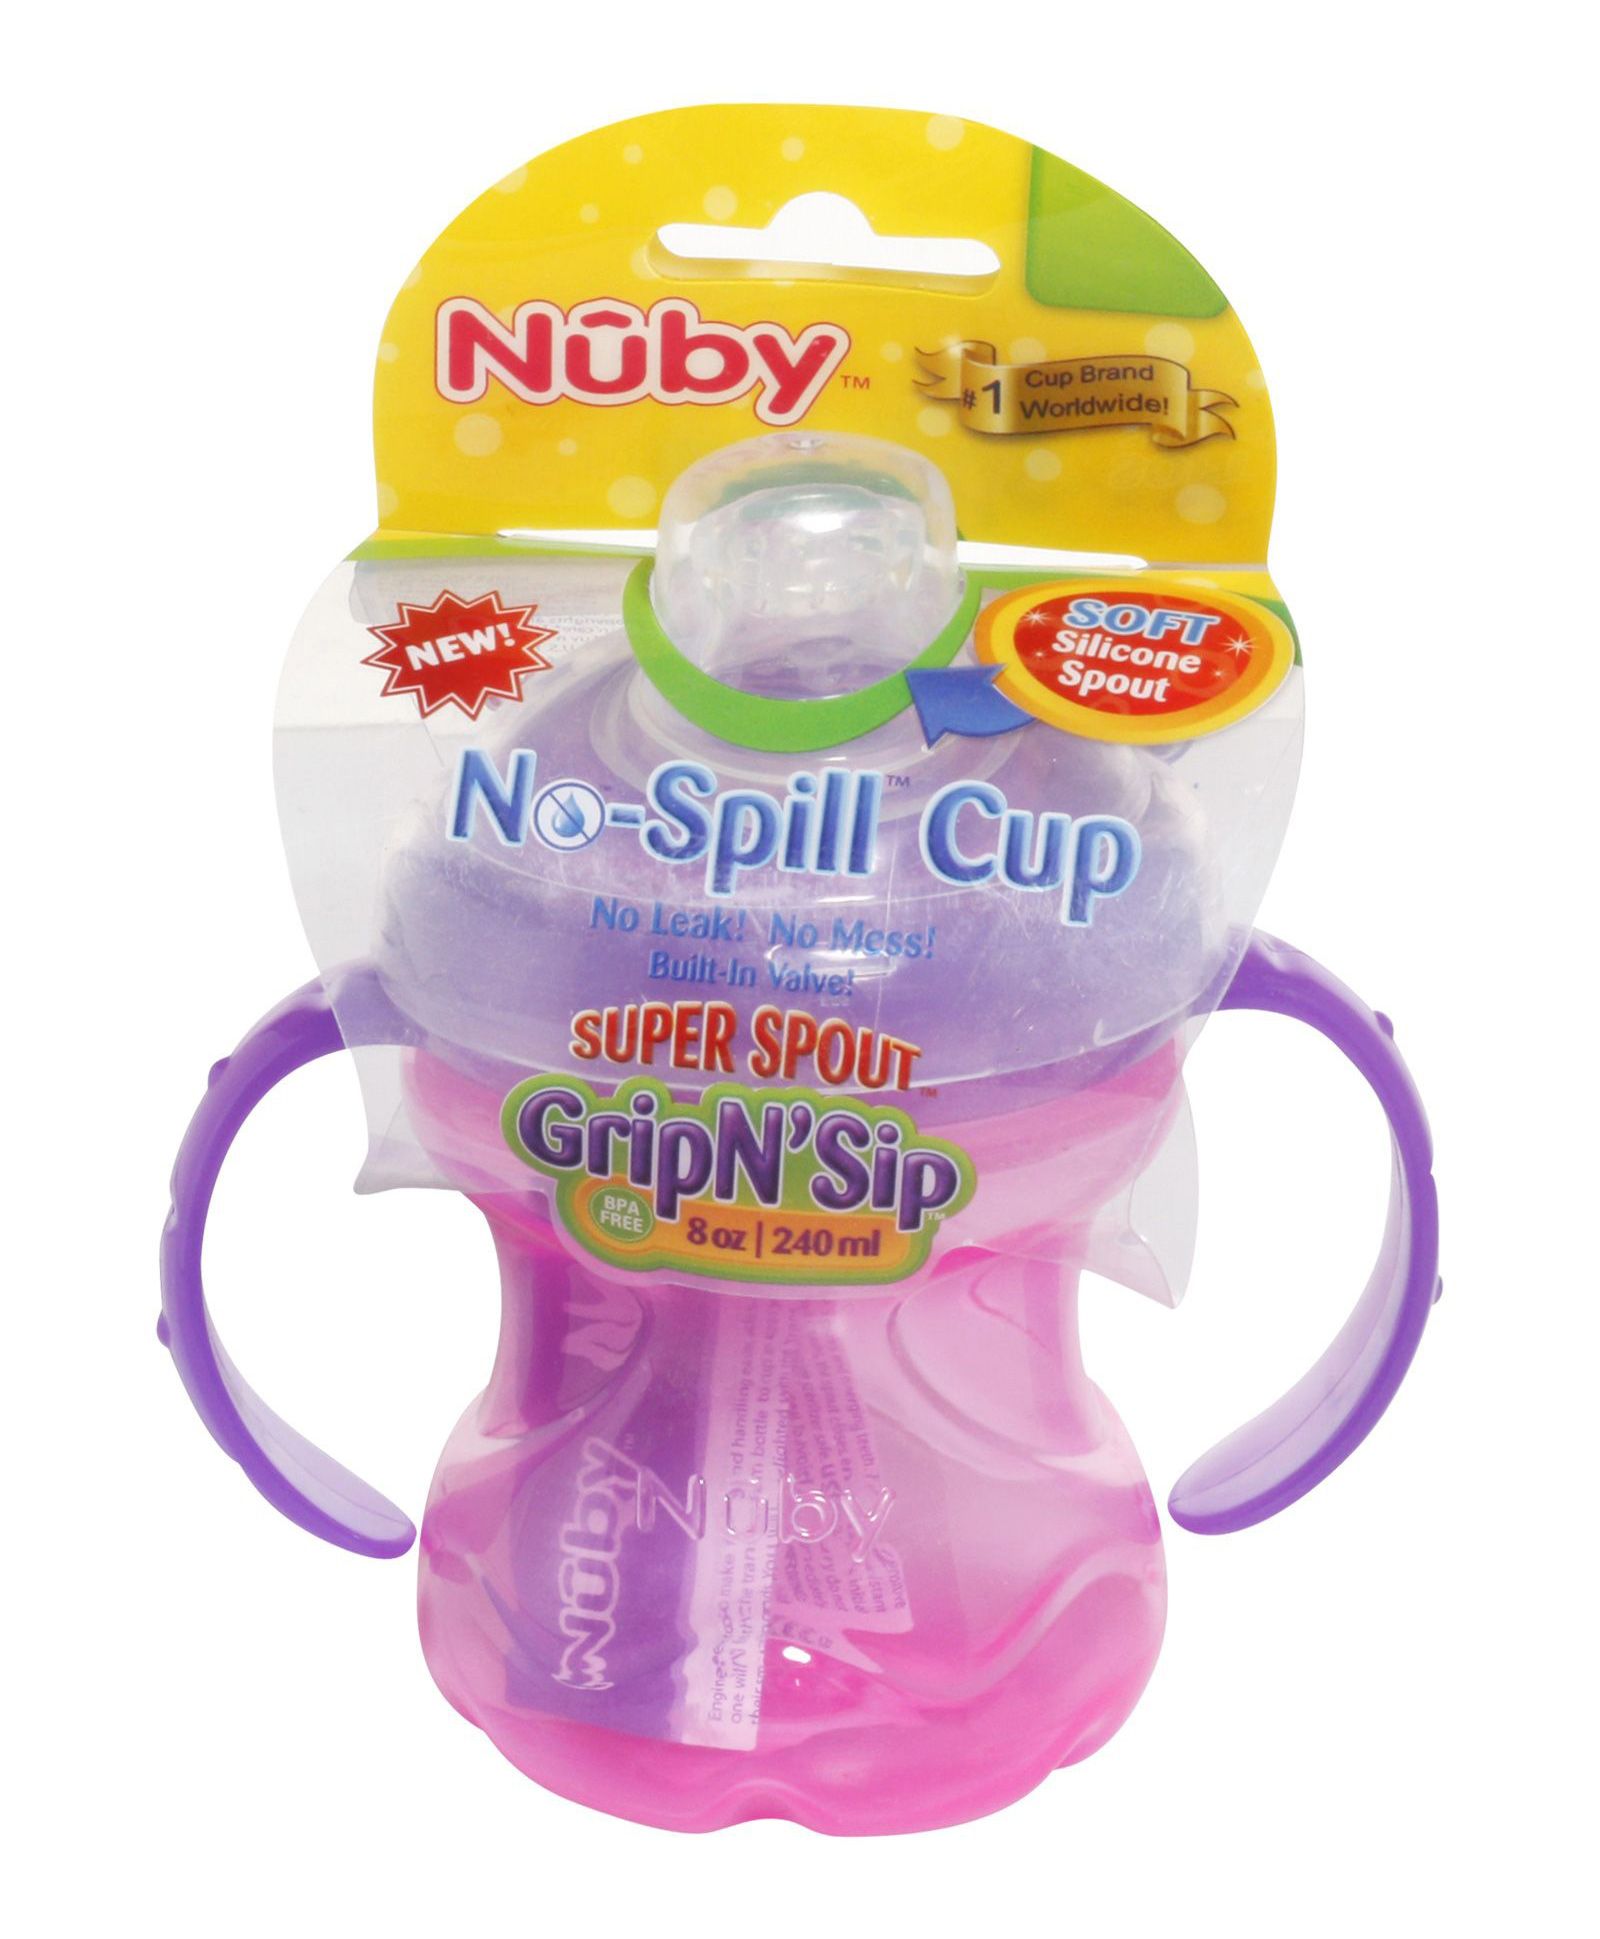 Nuby - No-Spill Cup Super Spout Grip N'' Sip